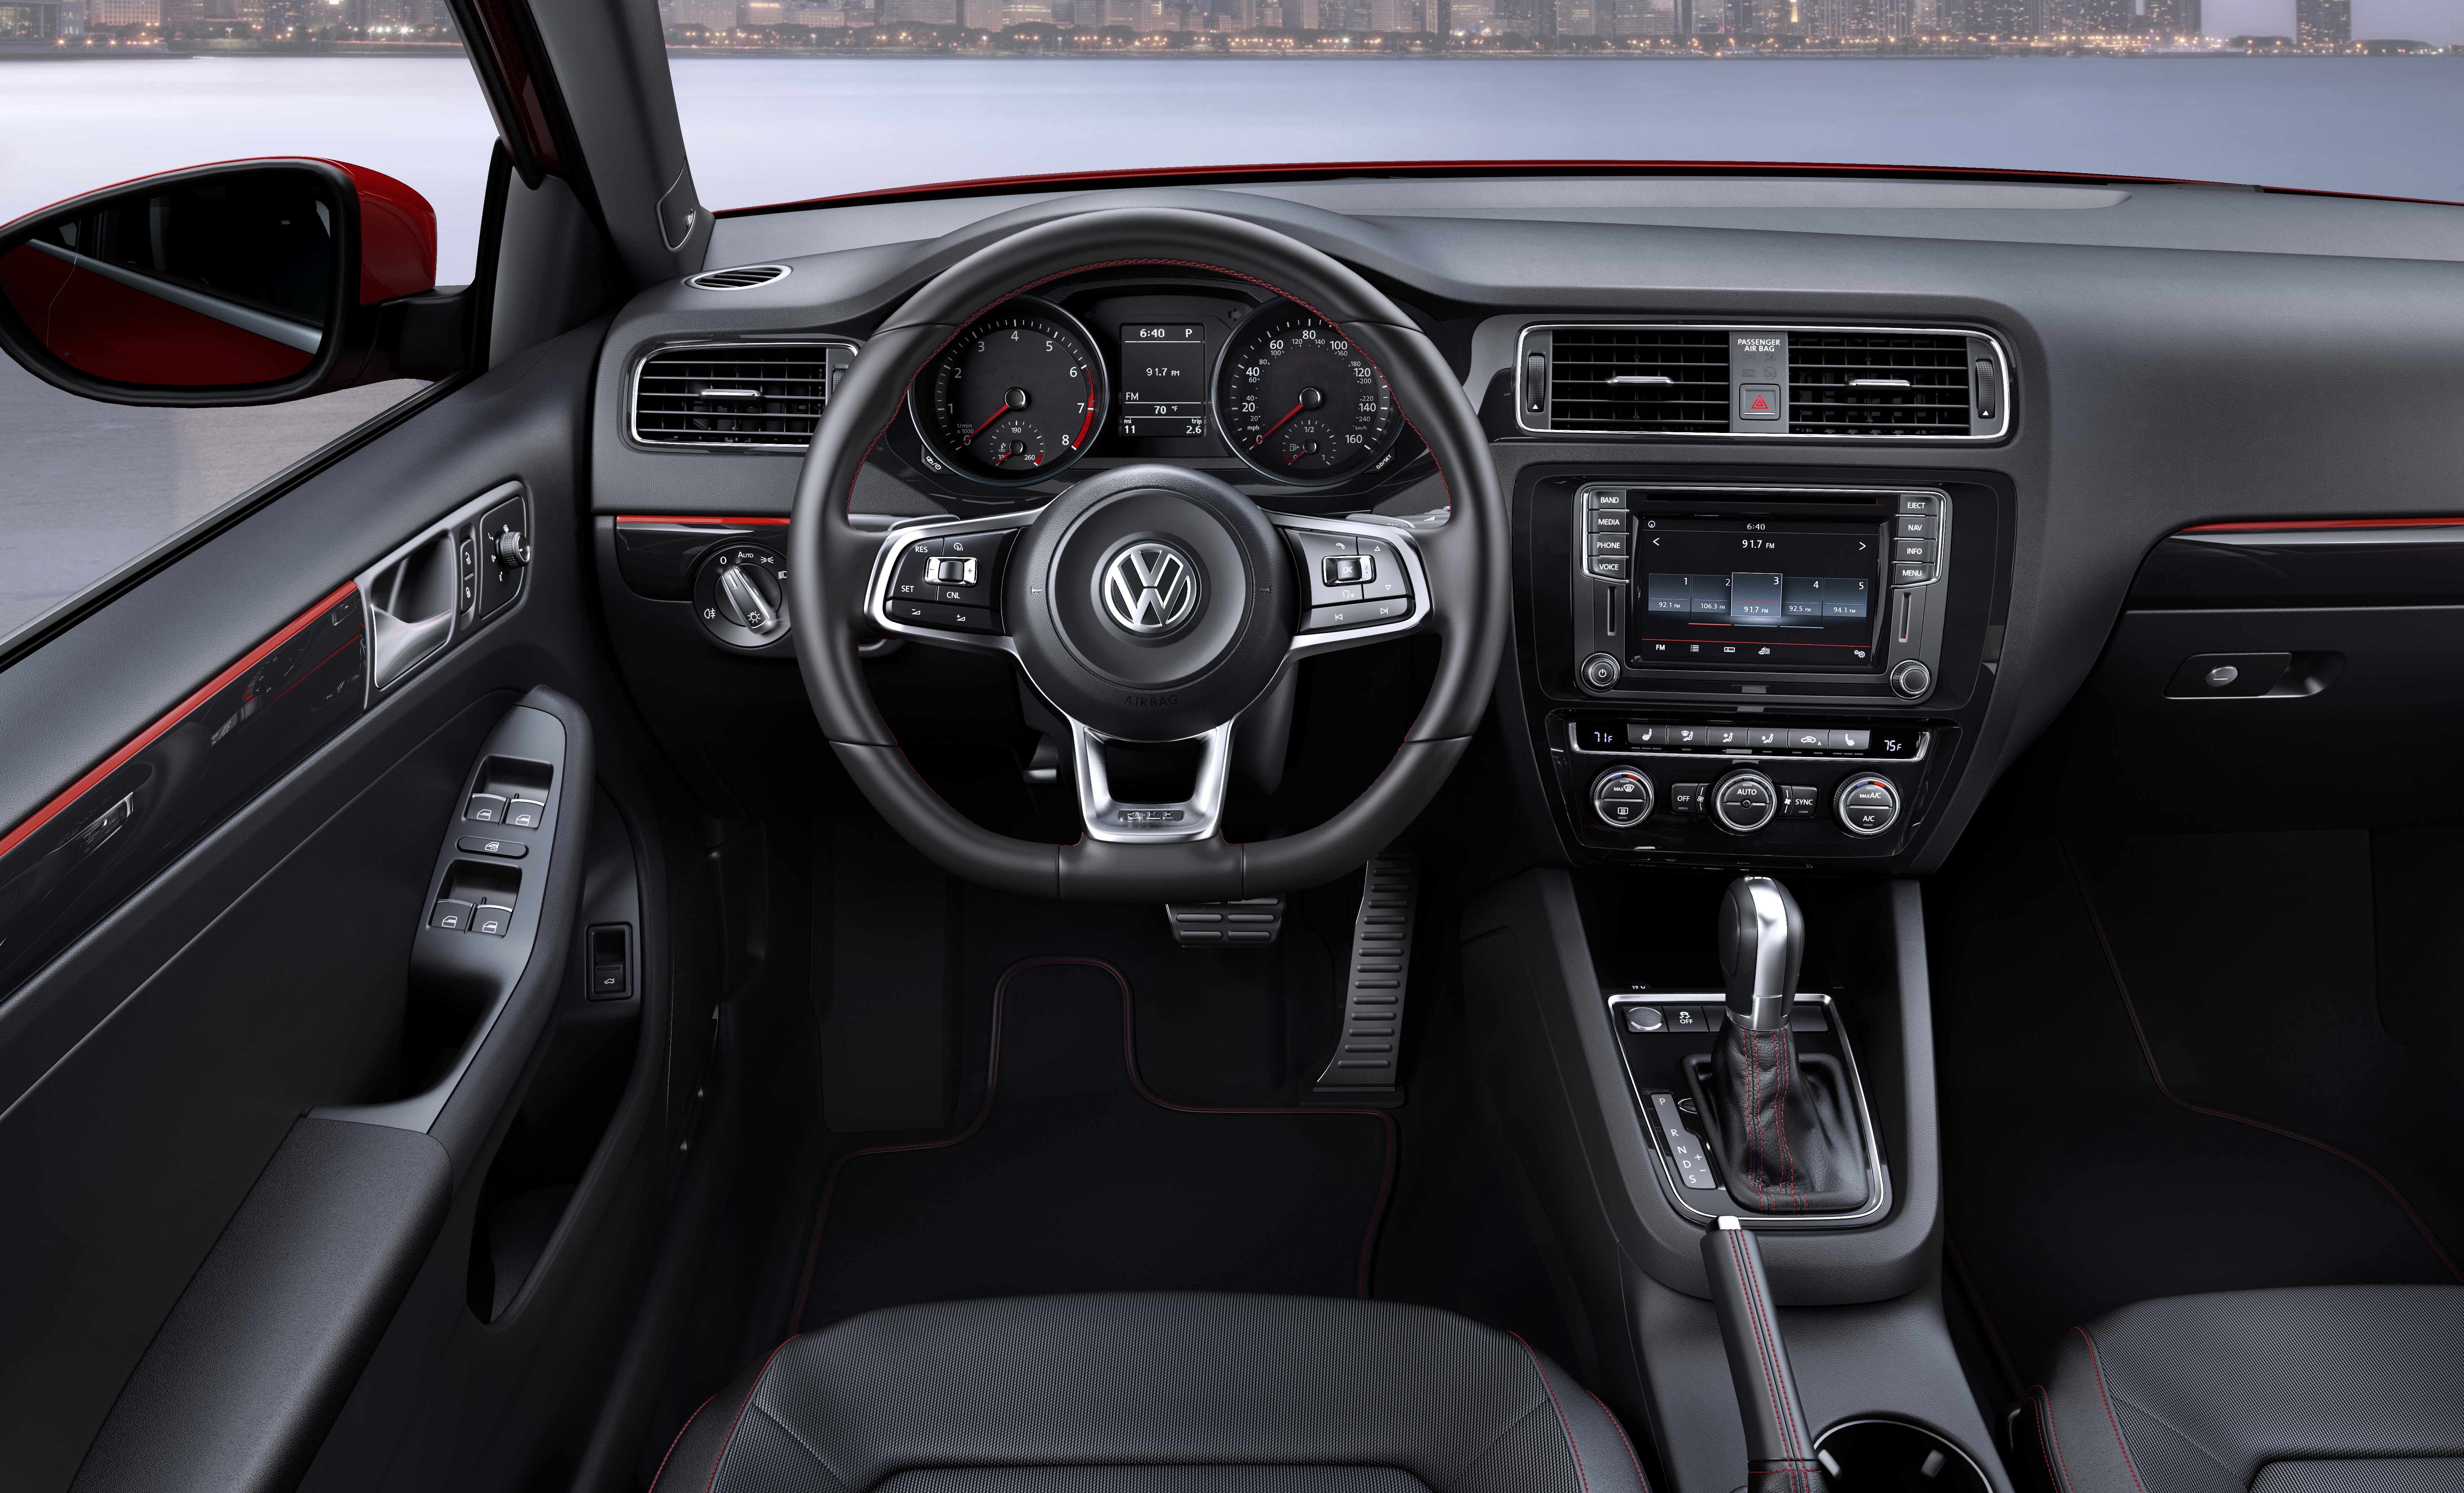 Volkswagen Jetta exterior model